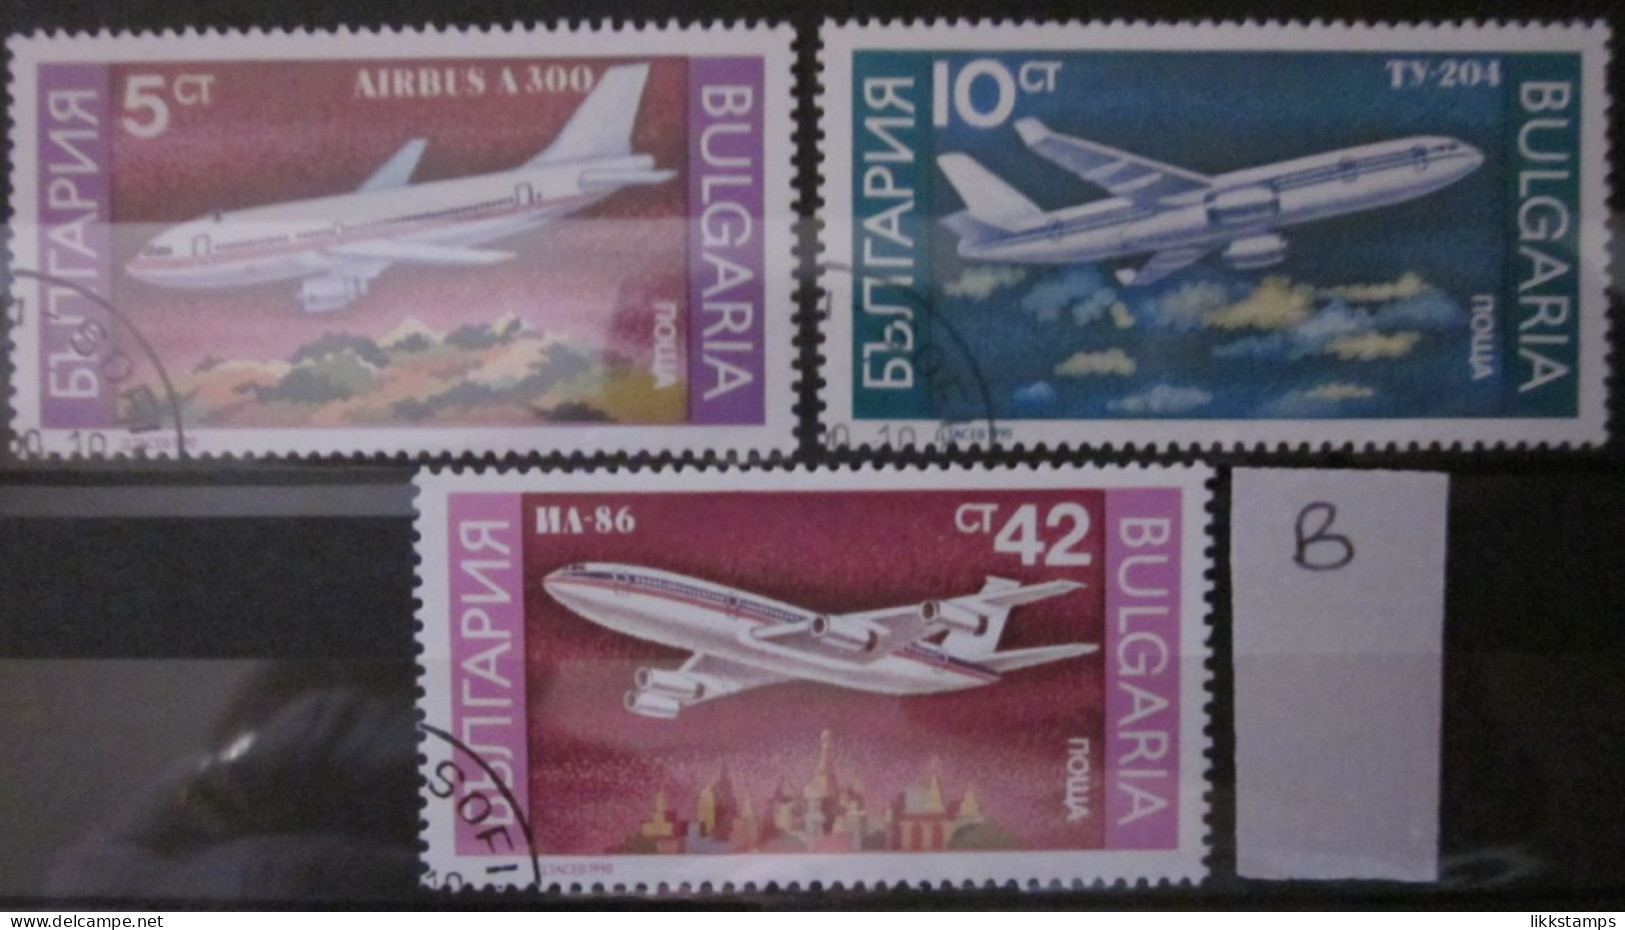 BULGARIA 1990 ~ S.G. 3705, 3706 & 3709, ~ 'LOT B' ~ AIRCRAFT. ~  VFU #02962 - Gebruikt